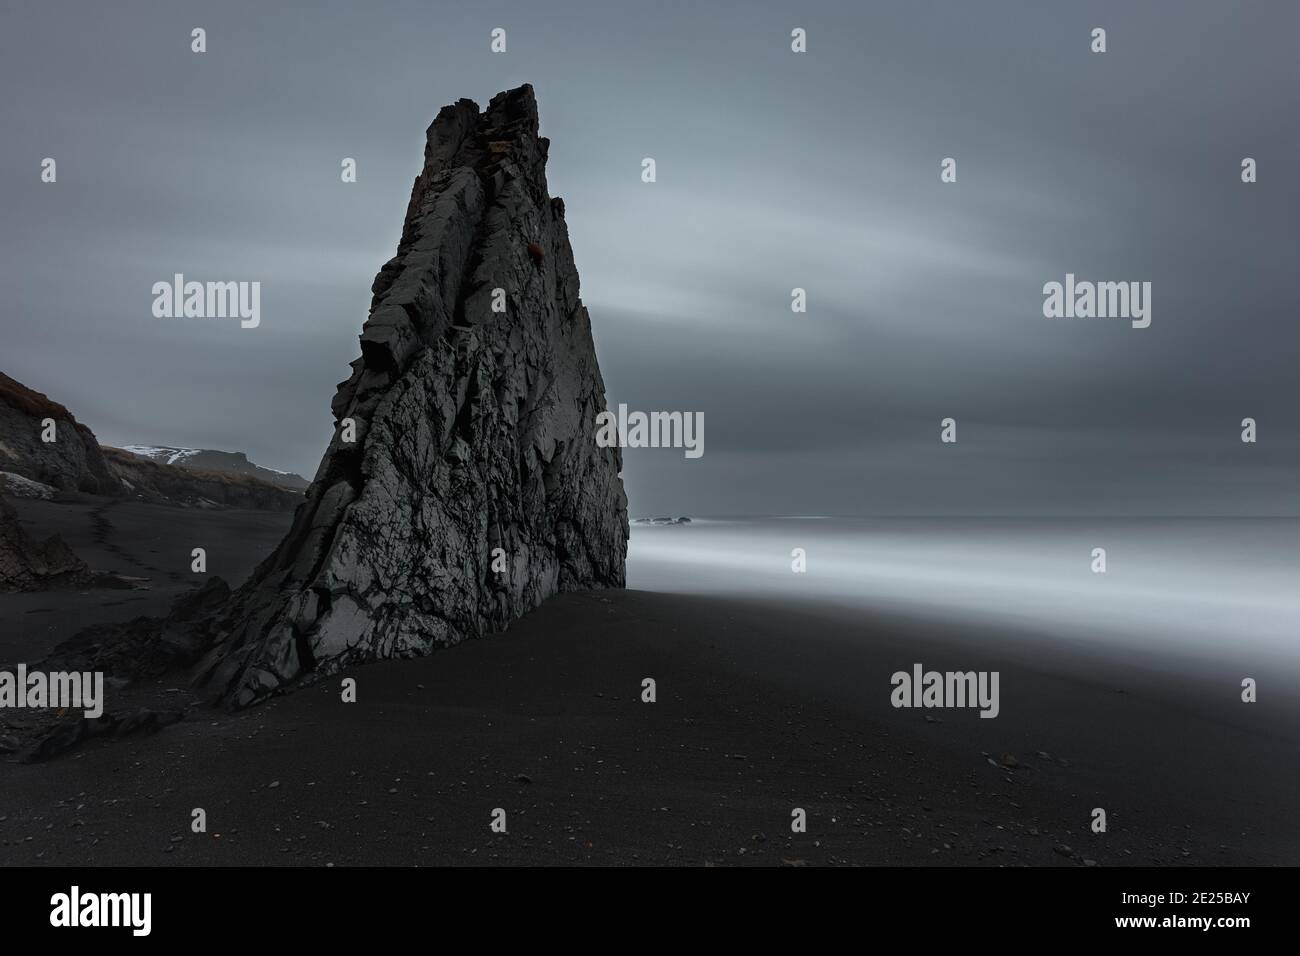 Single rocks, moony landscape of Iceland. Stock Photo